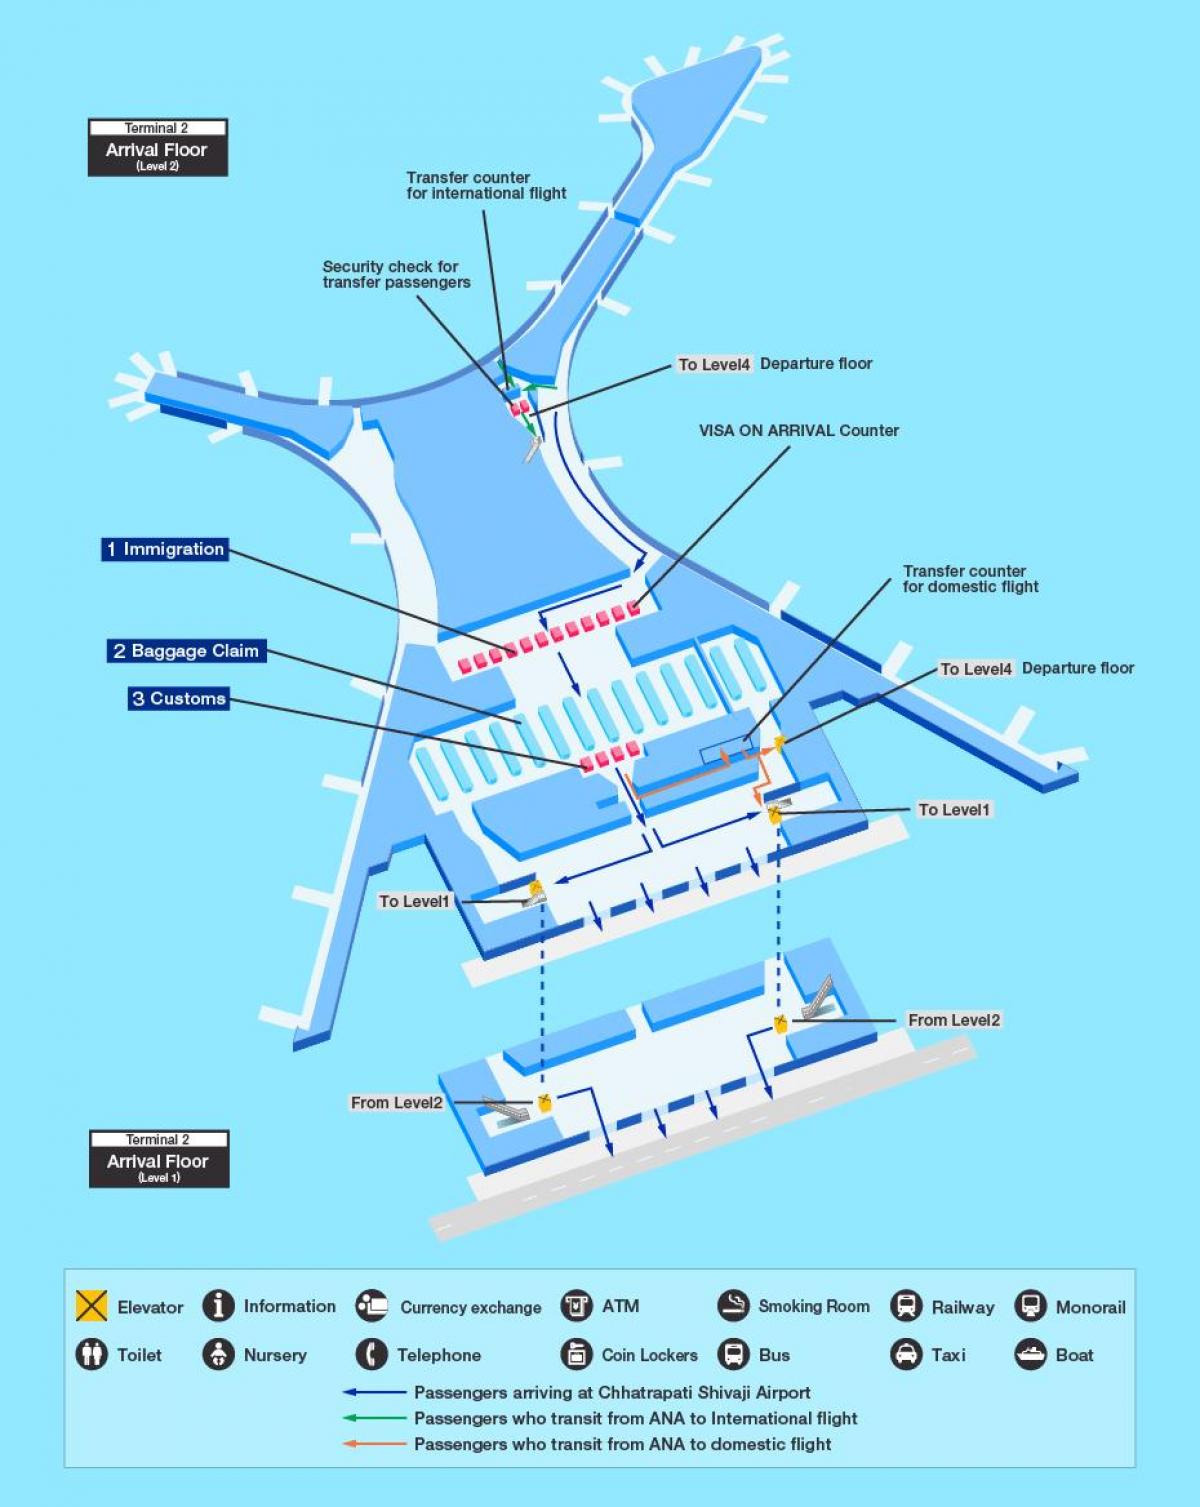 χάρτης της Mumbai international airport